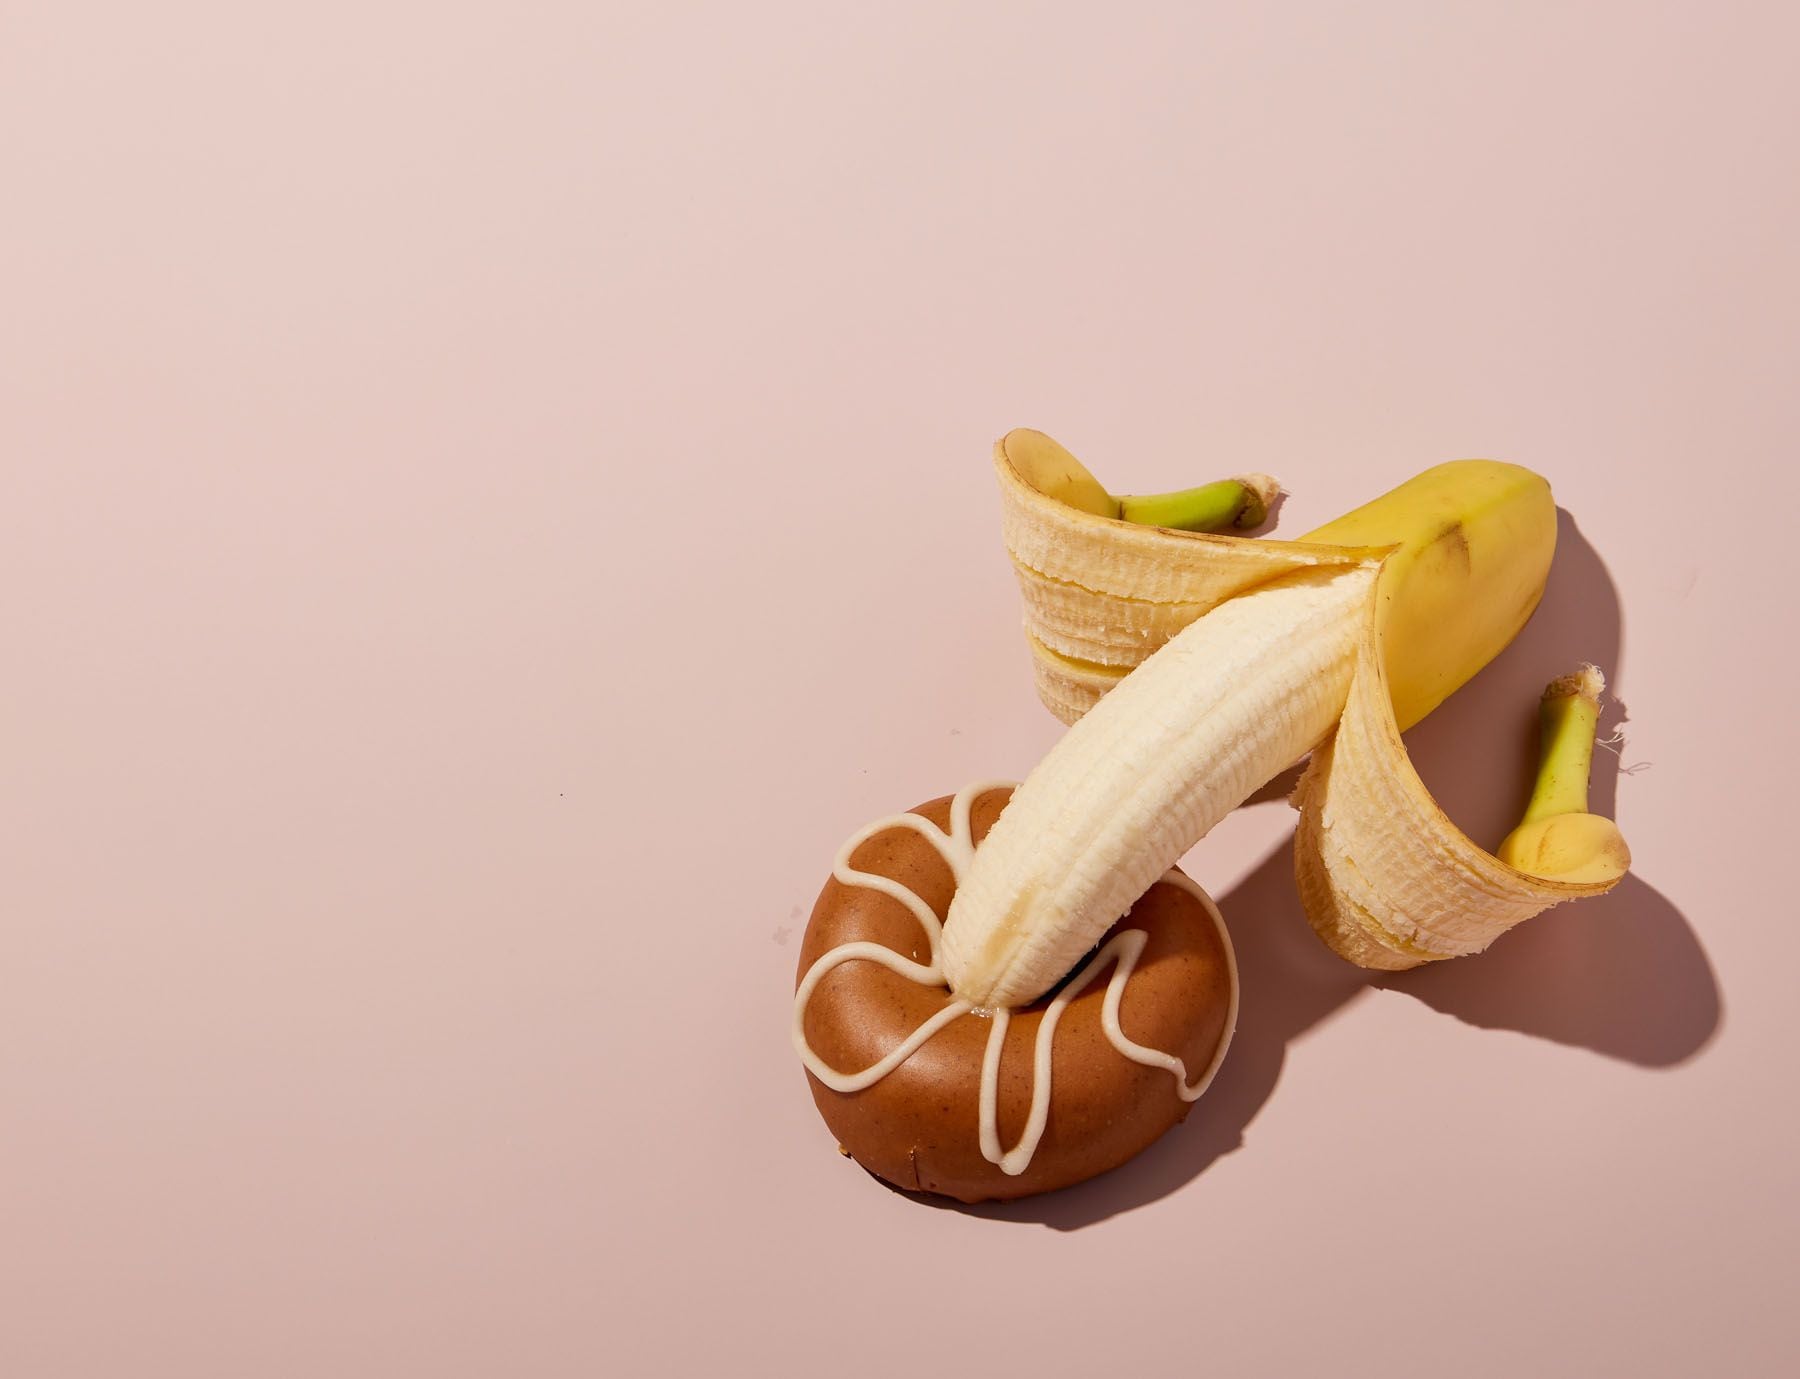 Un plátano con la punta dentro de una dona simbolizando el coito vaginal (Sellvavs.Life)